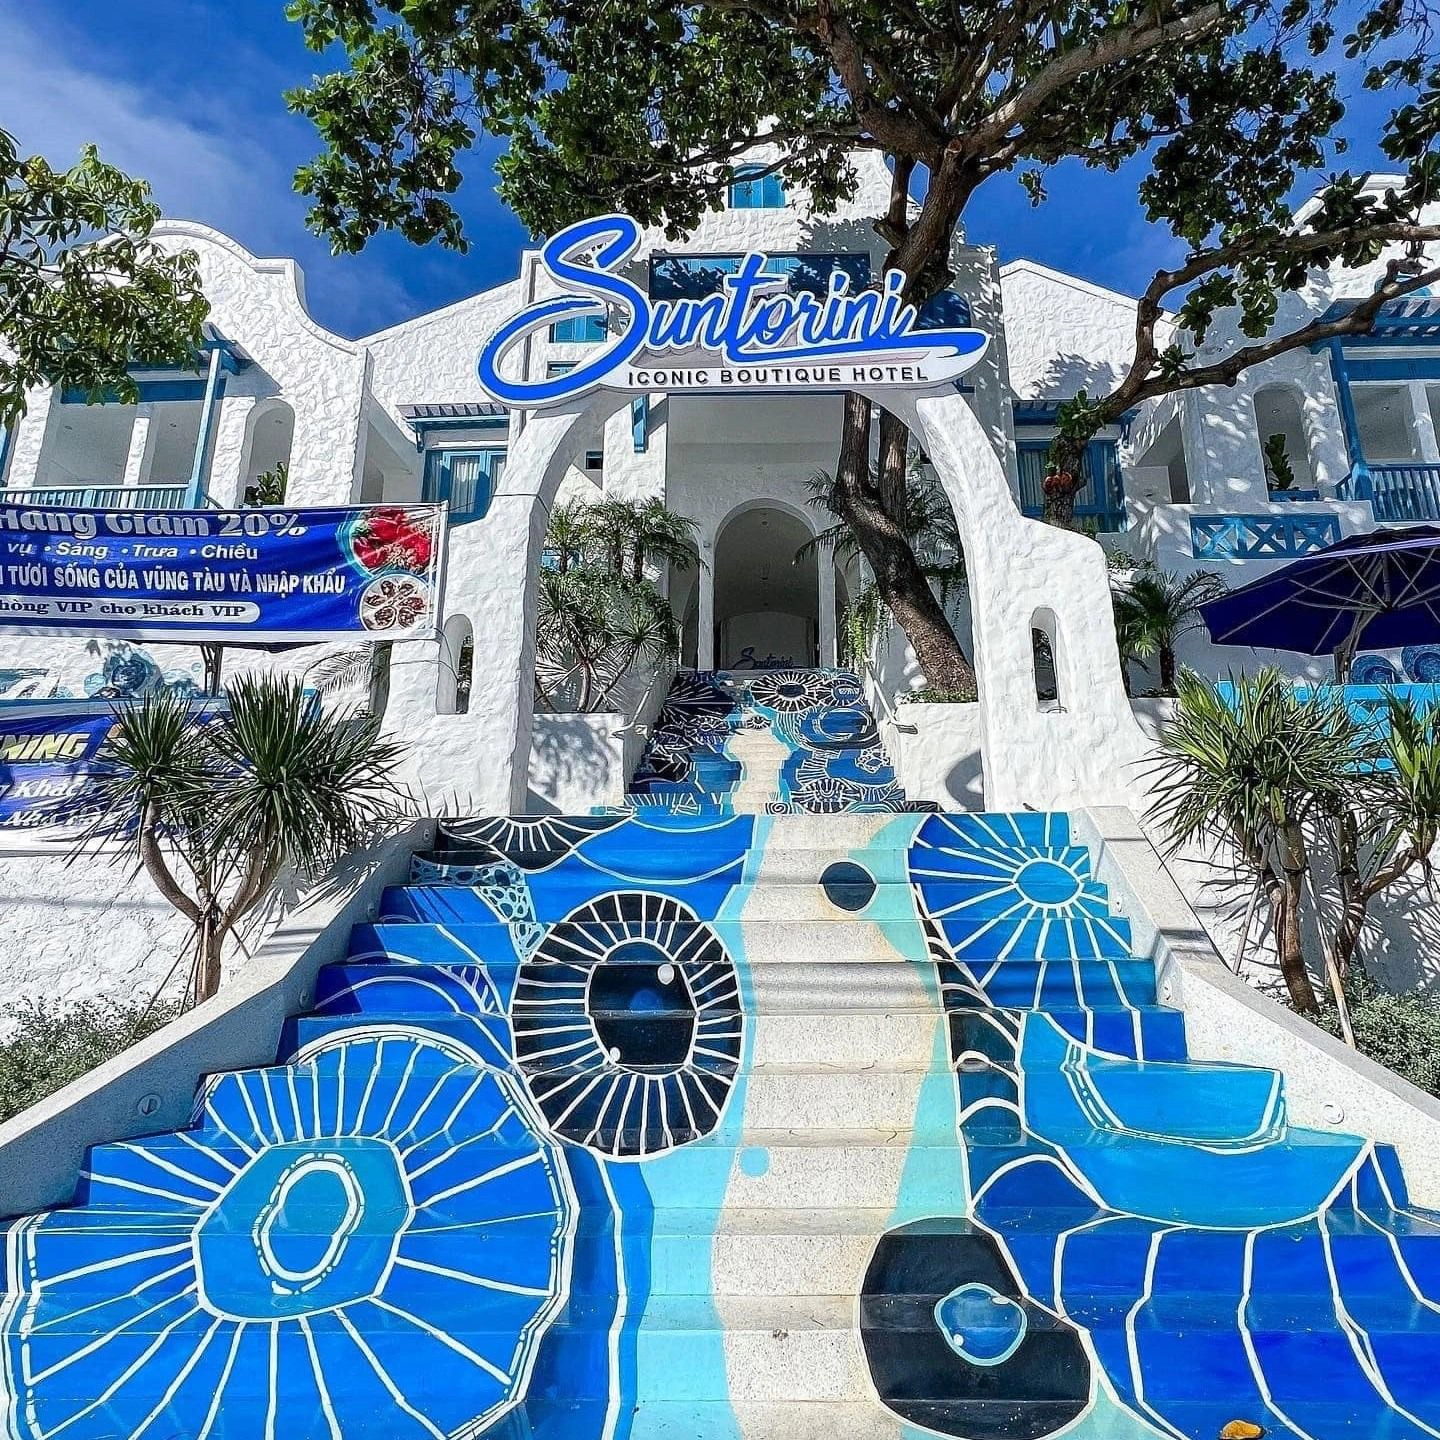 Suntorini Iconic Boutique Hotel - “Ốc đảo Địa Trung Hải” giữa lòng Vũng Tàu